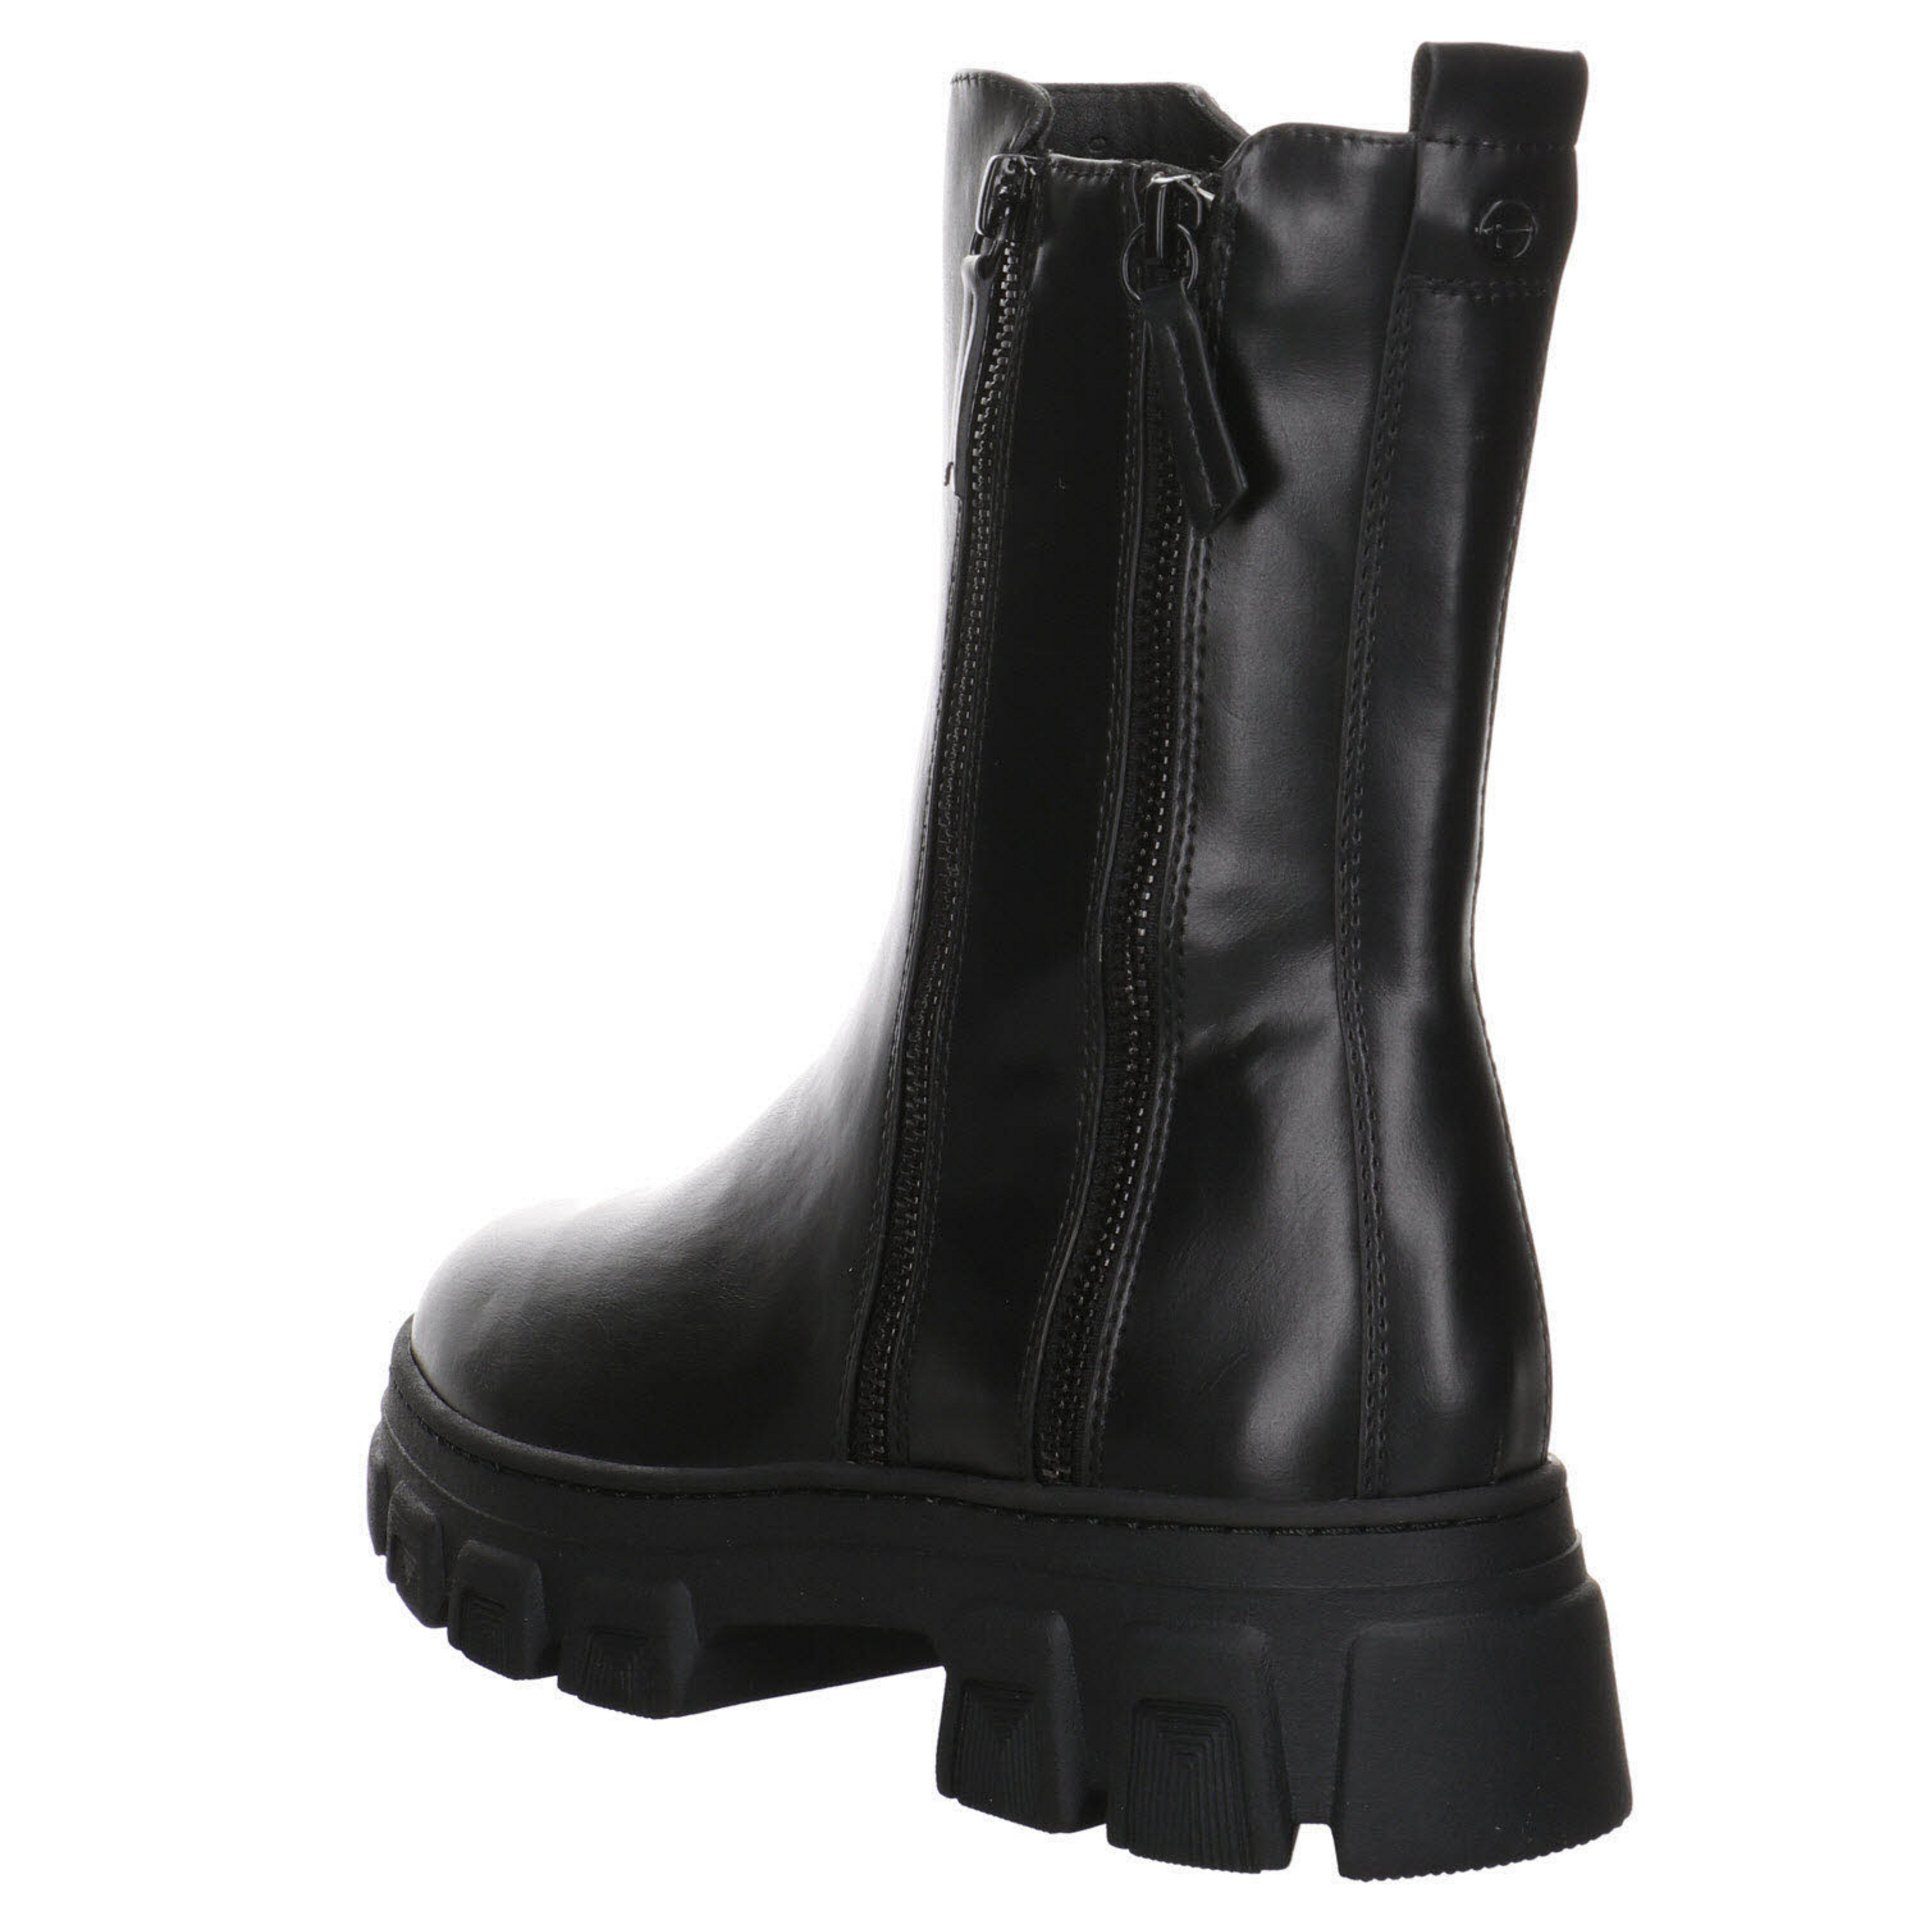 Boots BLACK Schuhe Stiefeletten Freizeit Stiefel Tamaris Elegant Damen Glattleder